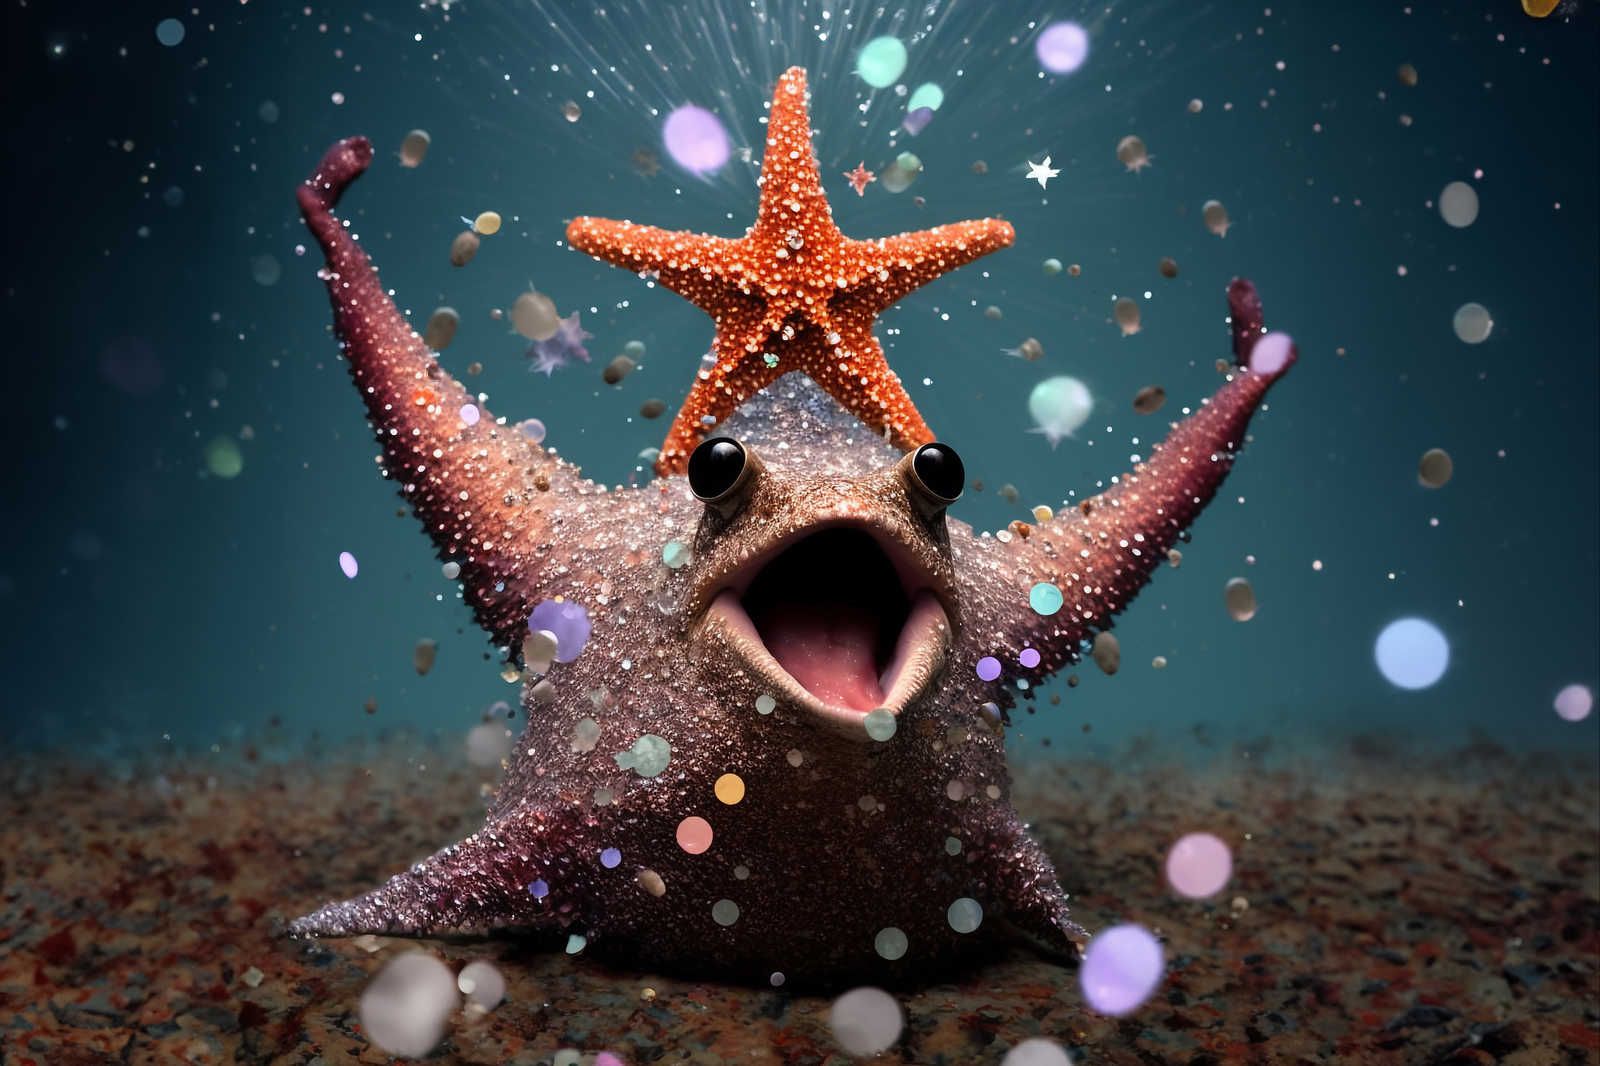             Toile KI »party starfish« - 120 cm x 80 cm
        